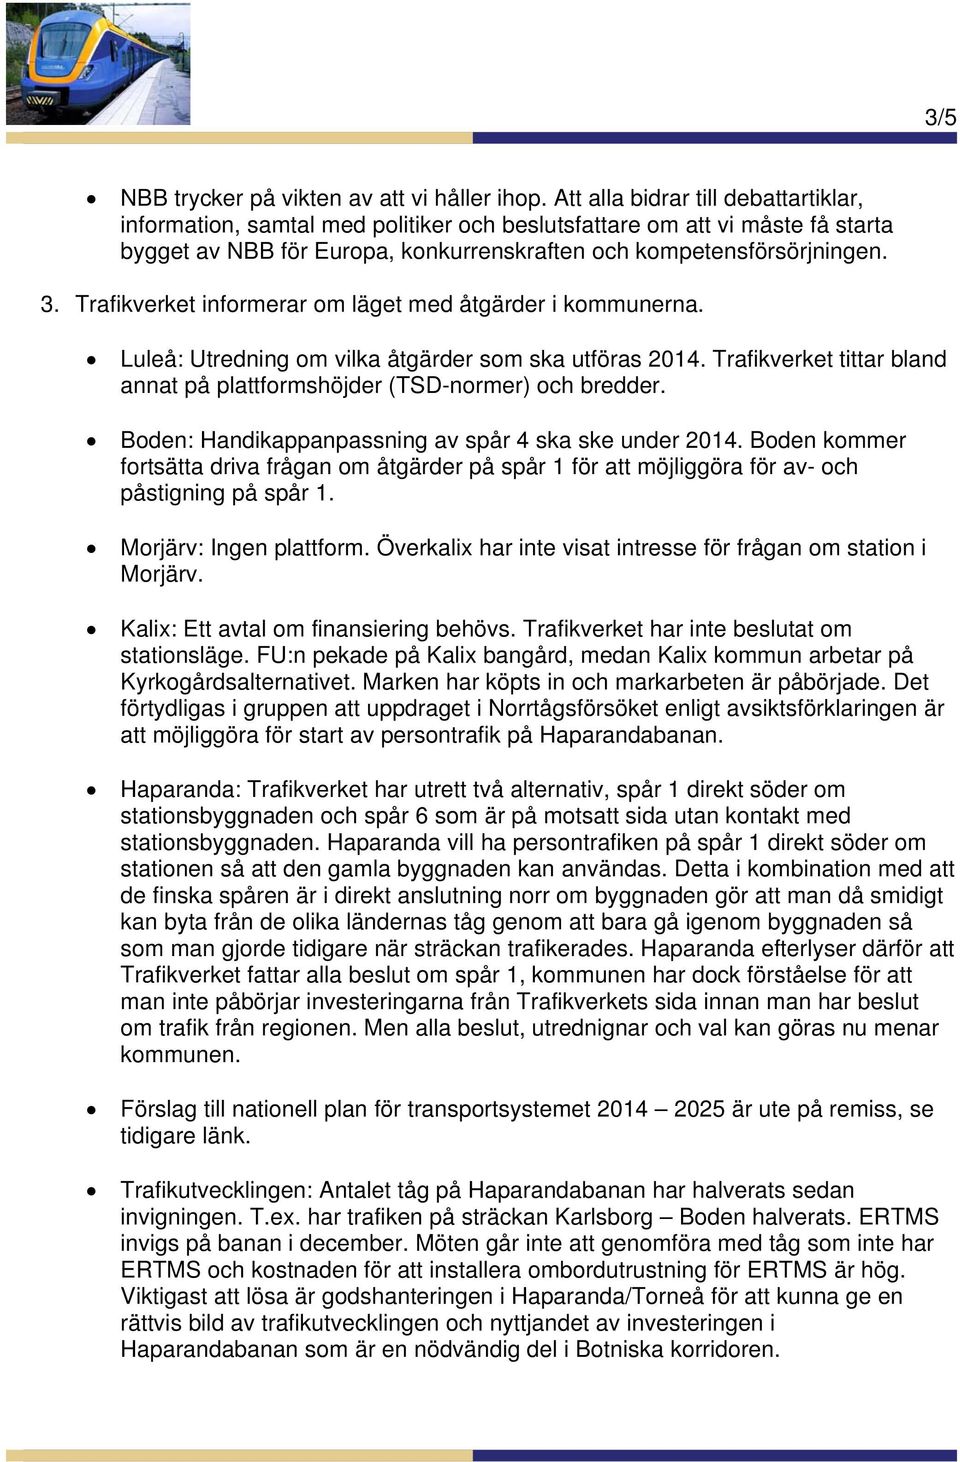 Trafikverket informerar om läget med åtgärder i kommunerna. Luleå: Utredning om vilka åtgärder som ska utföras 2014. Trafikverket tittar bland annat på plattformshöjder (TSD-normer) och bredder.